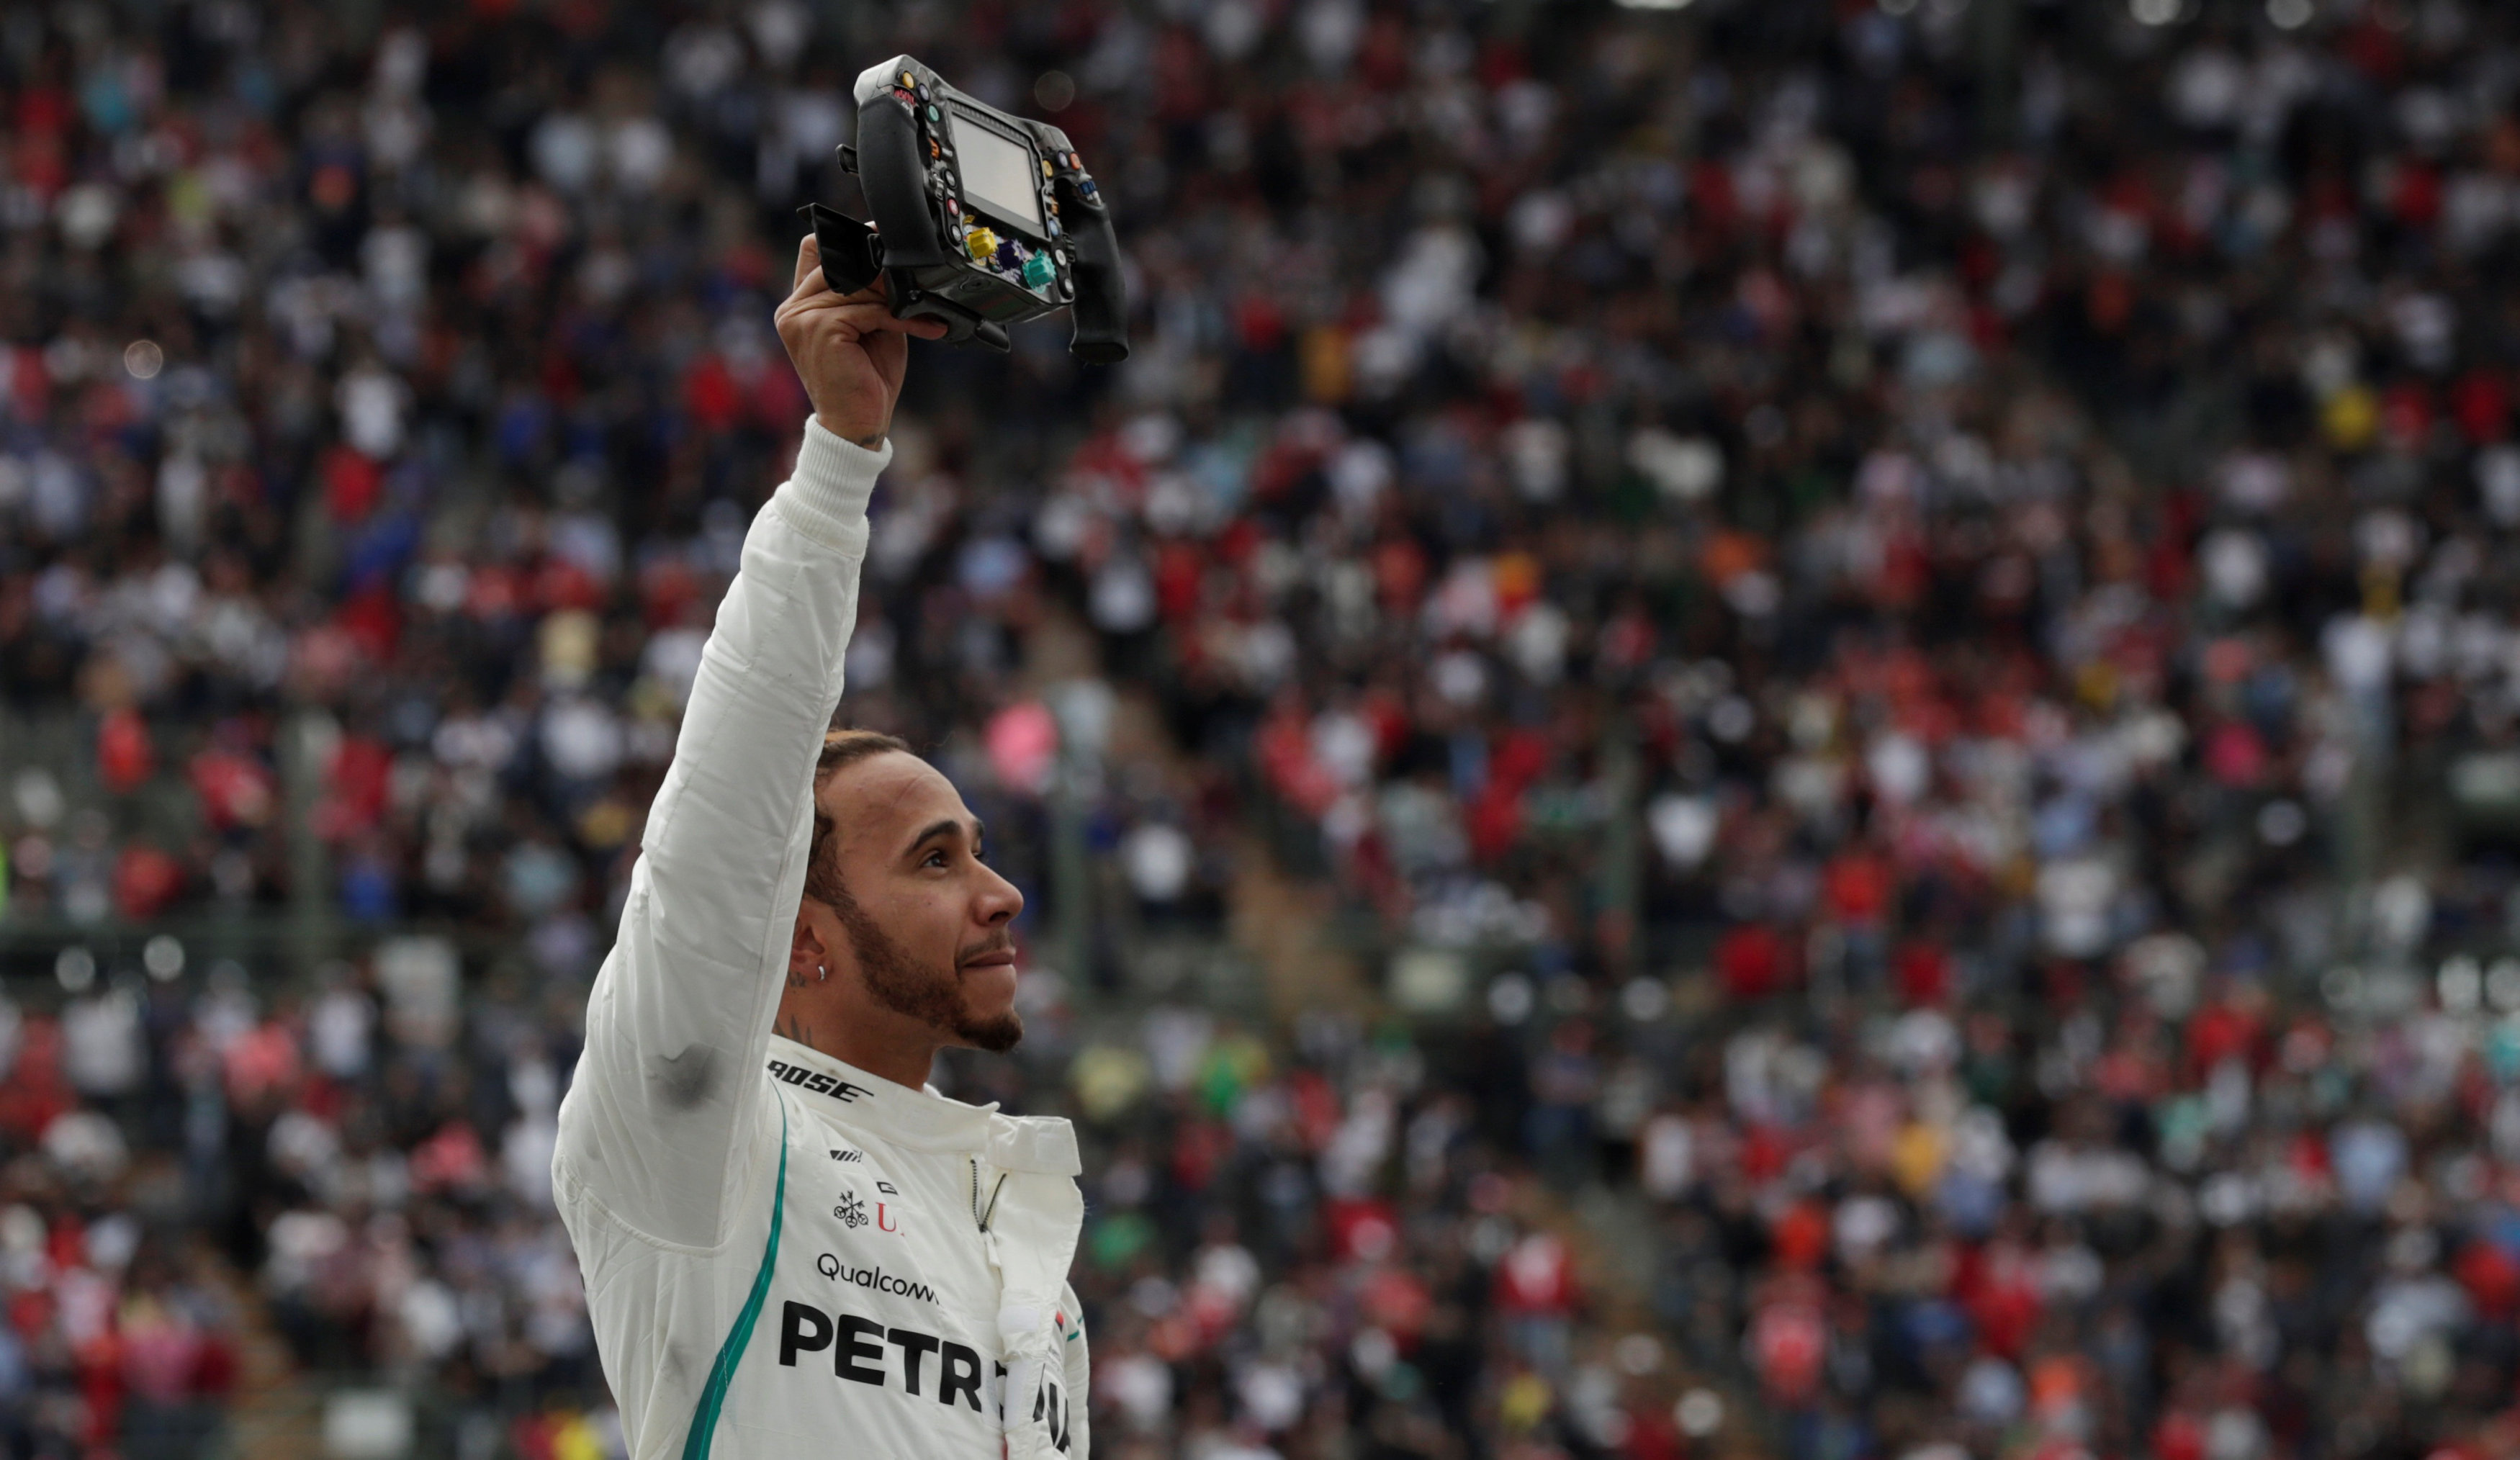 Lewis Hamilton conquista su quinto título mundial de F1 en el Gran Premio de México (Fotos)